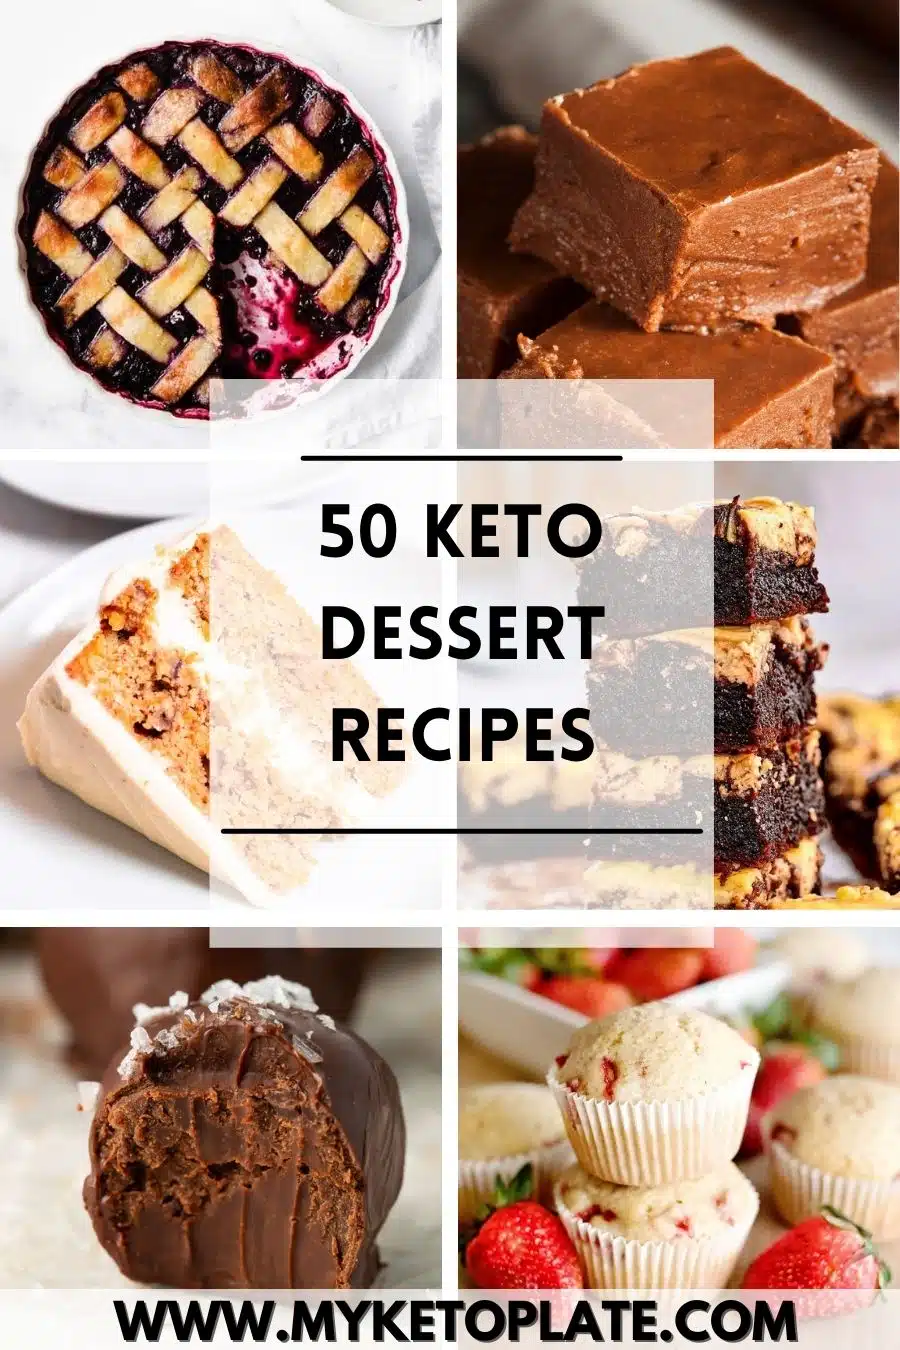 50 Keto Dessert Recipes
